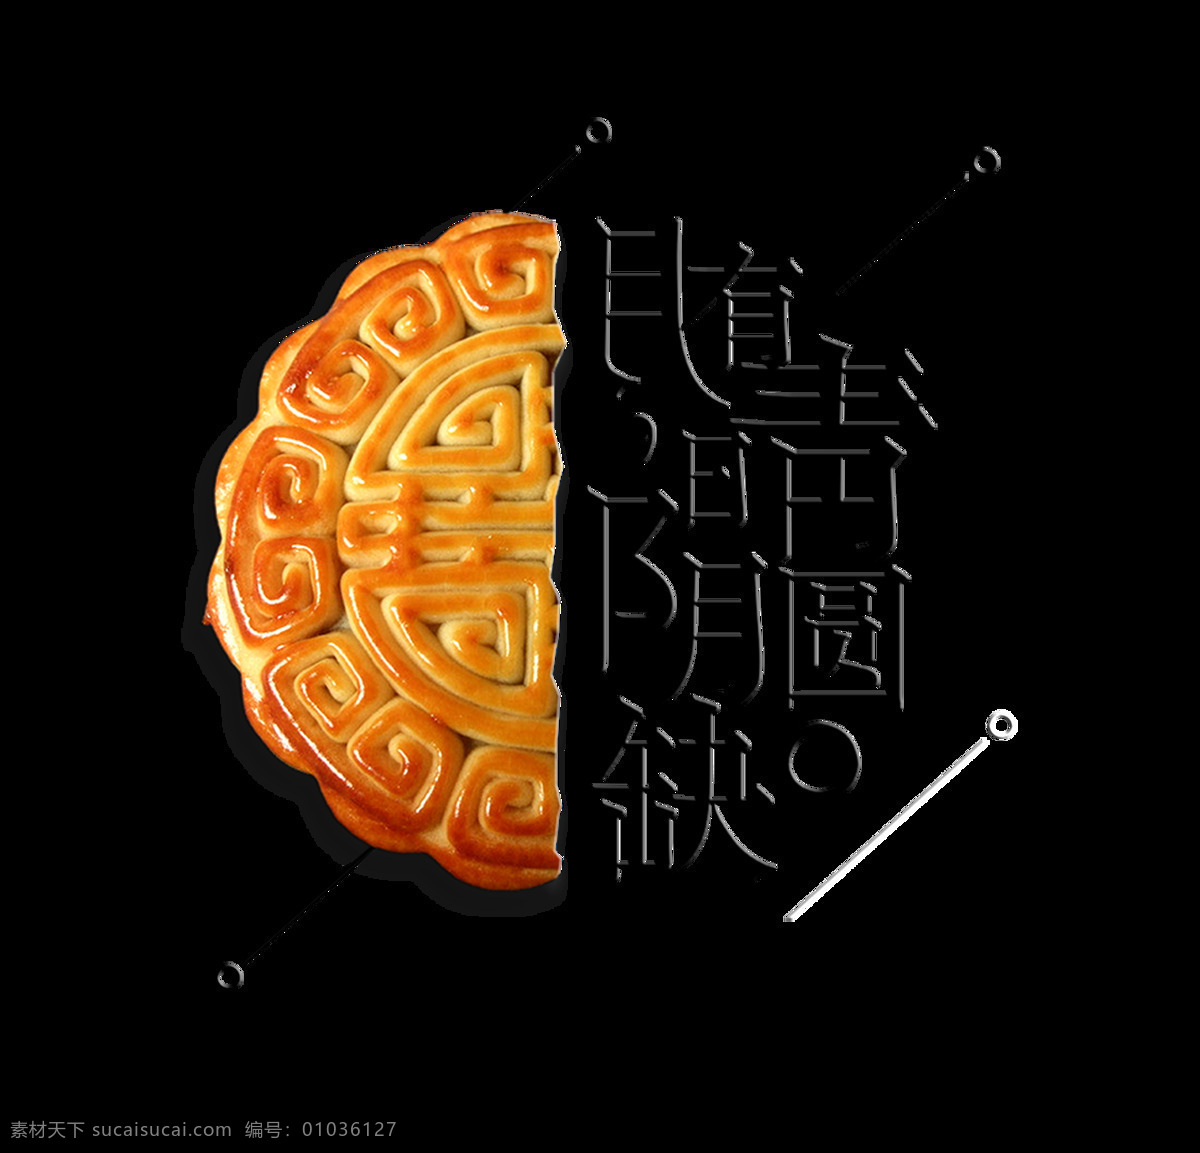 月 阴 晴 圆 缺 中秋节 艺术 字 月饼 广告 宣传 月有阴晴圆缺 团圆 艺术字 海报 元素